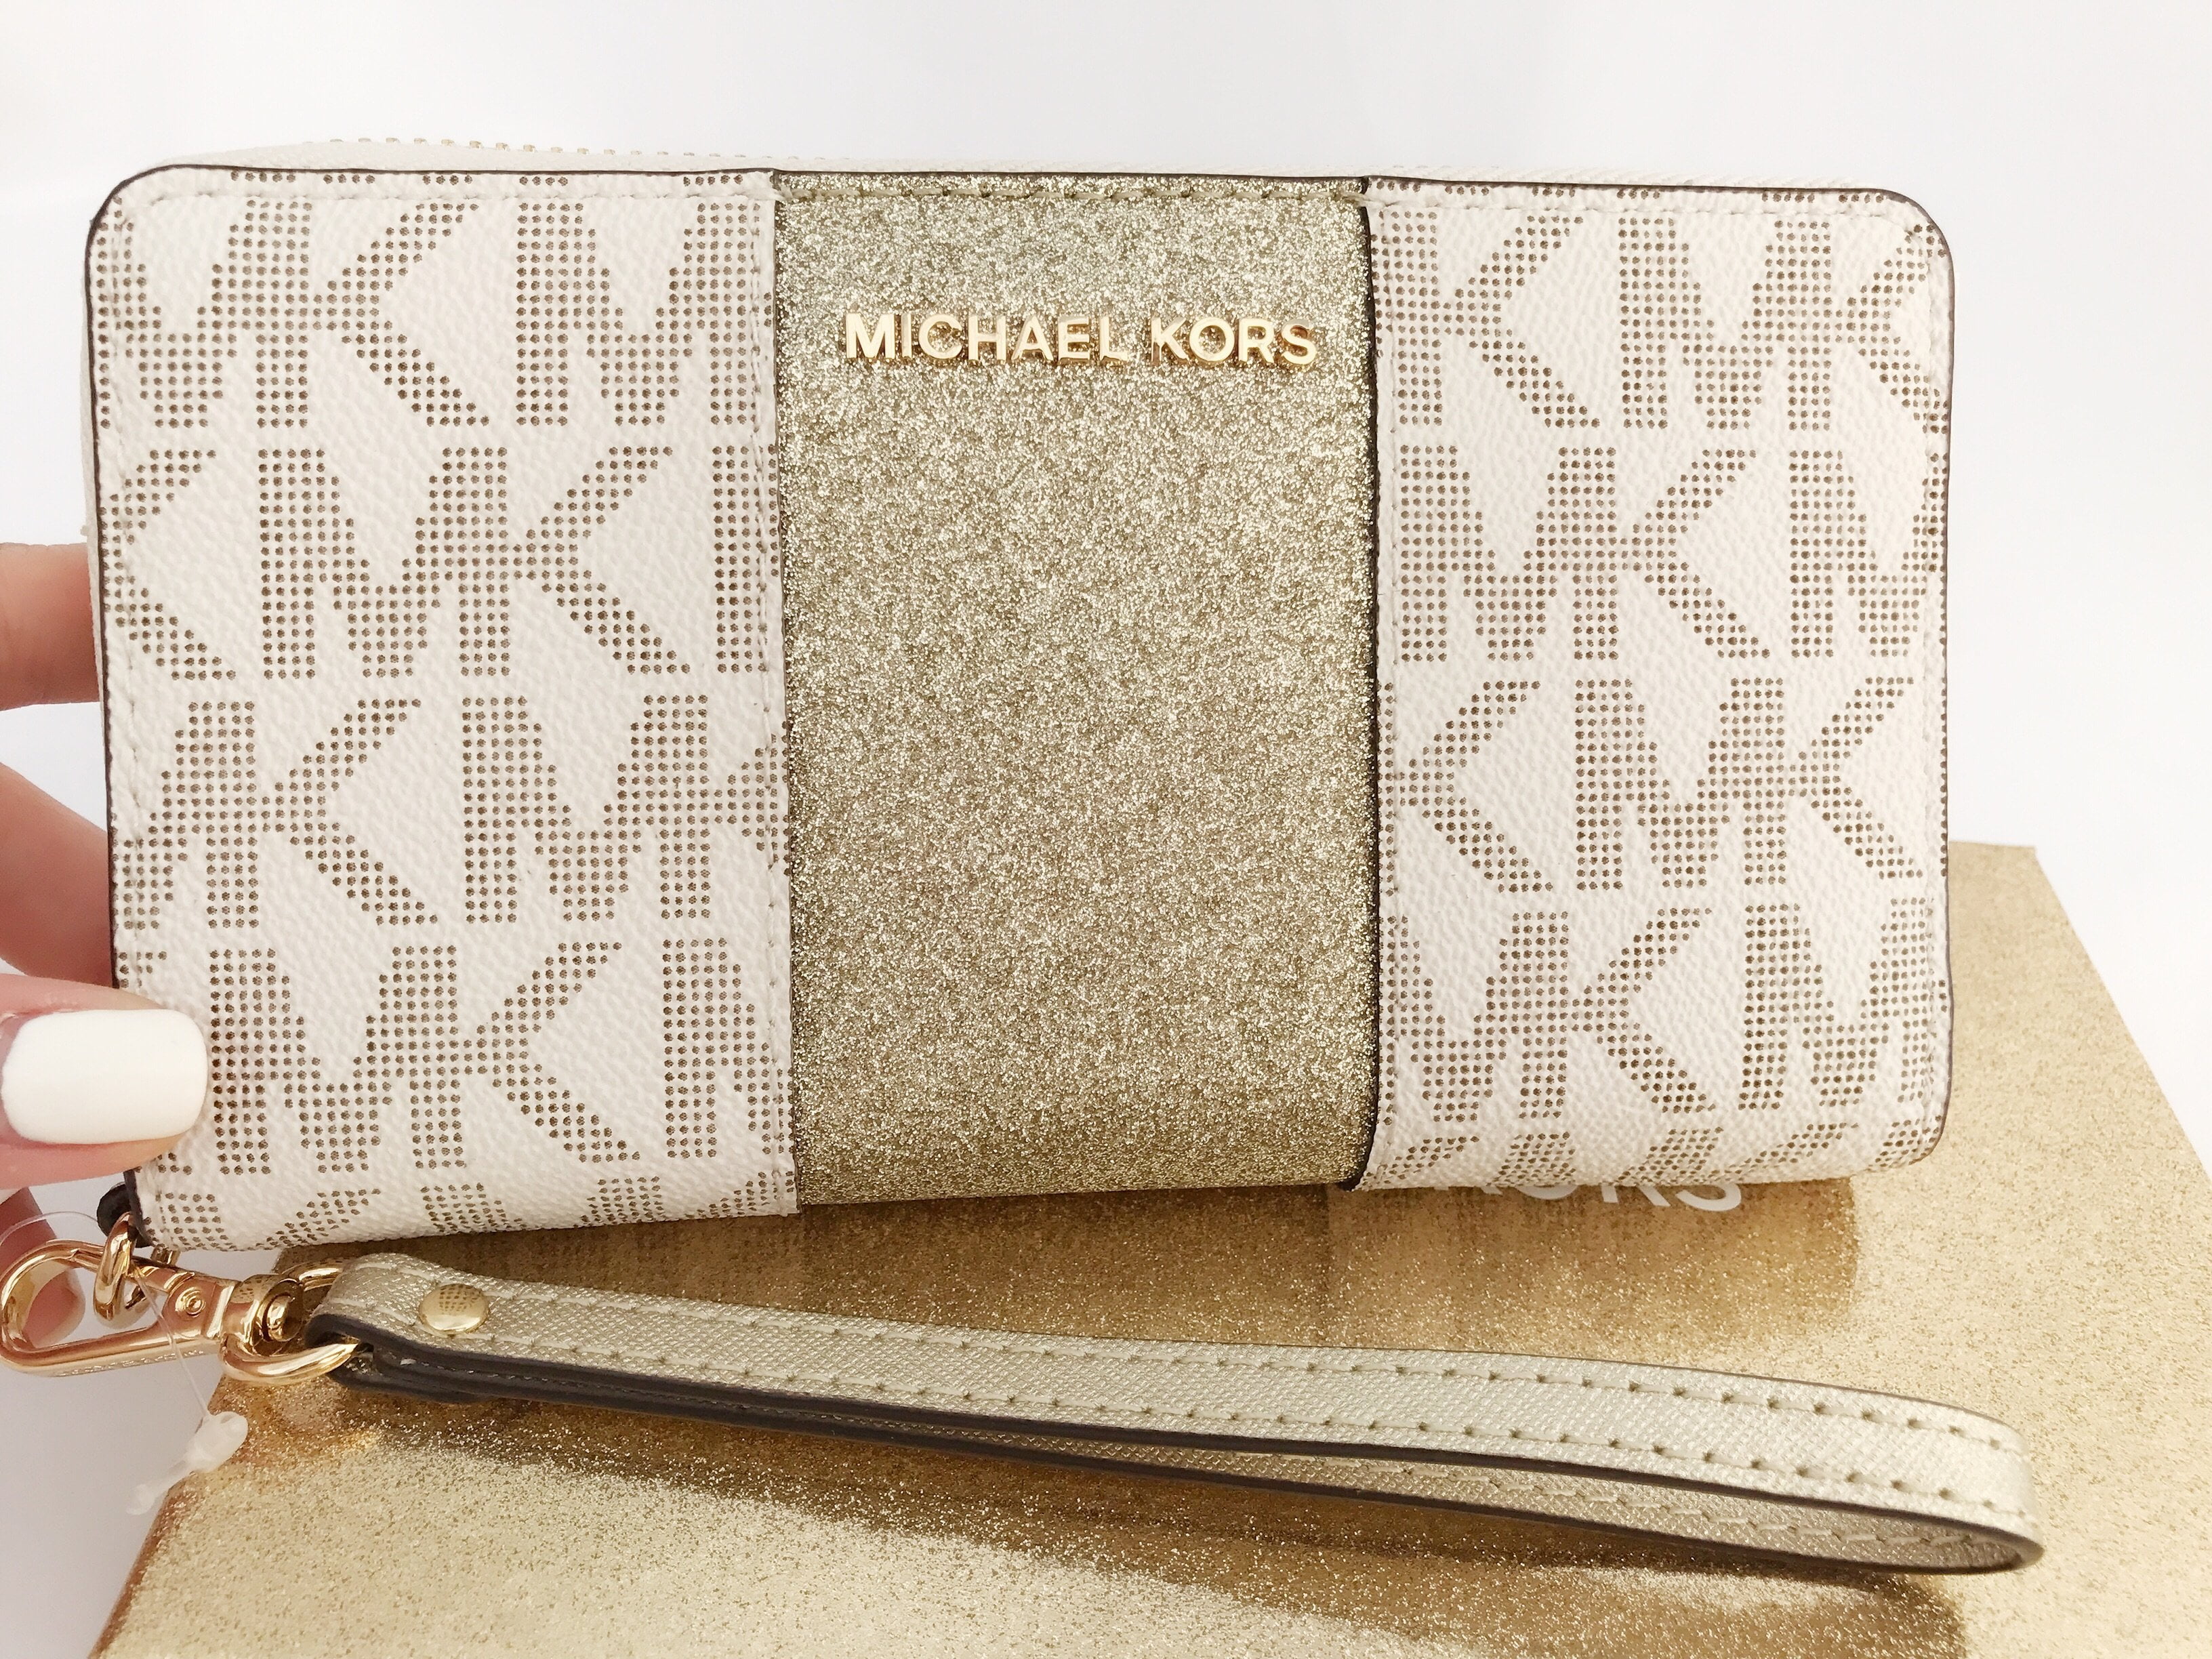 Michael Kors Gold Wallet - Michael Kors Signature Metallic Zip Around ...